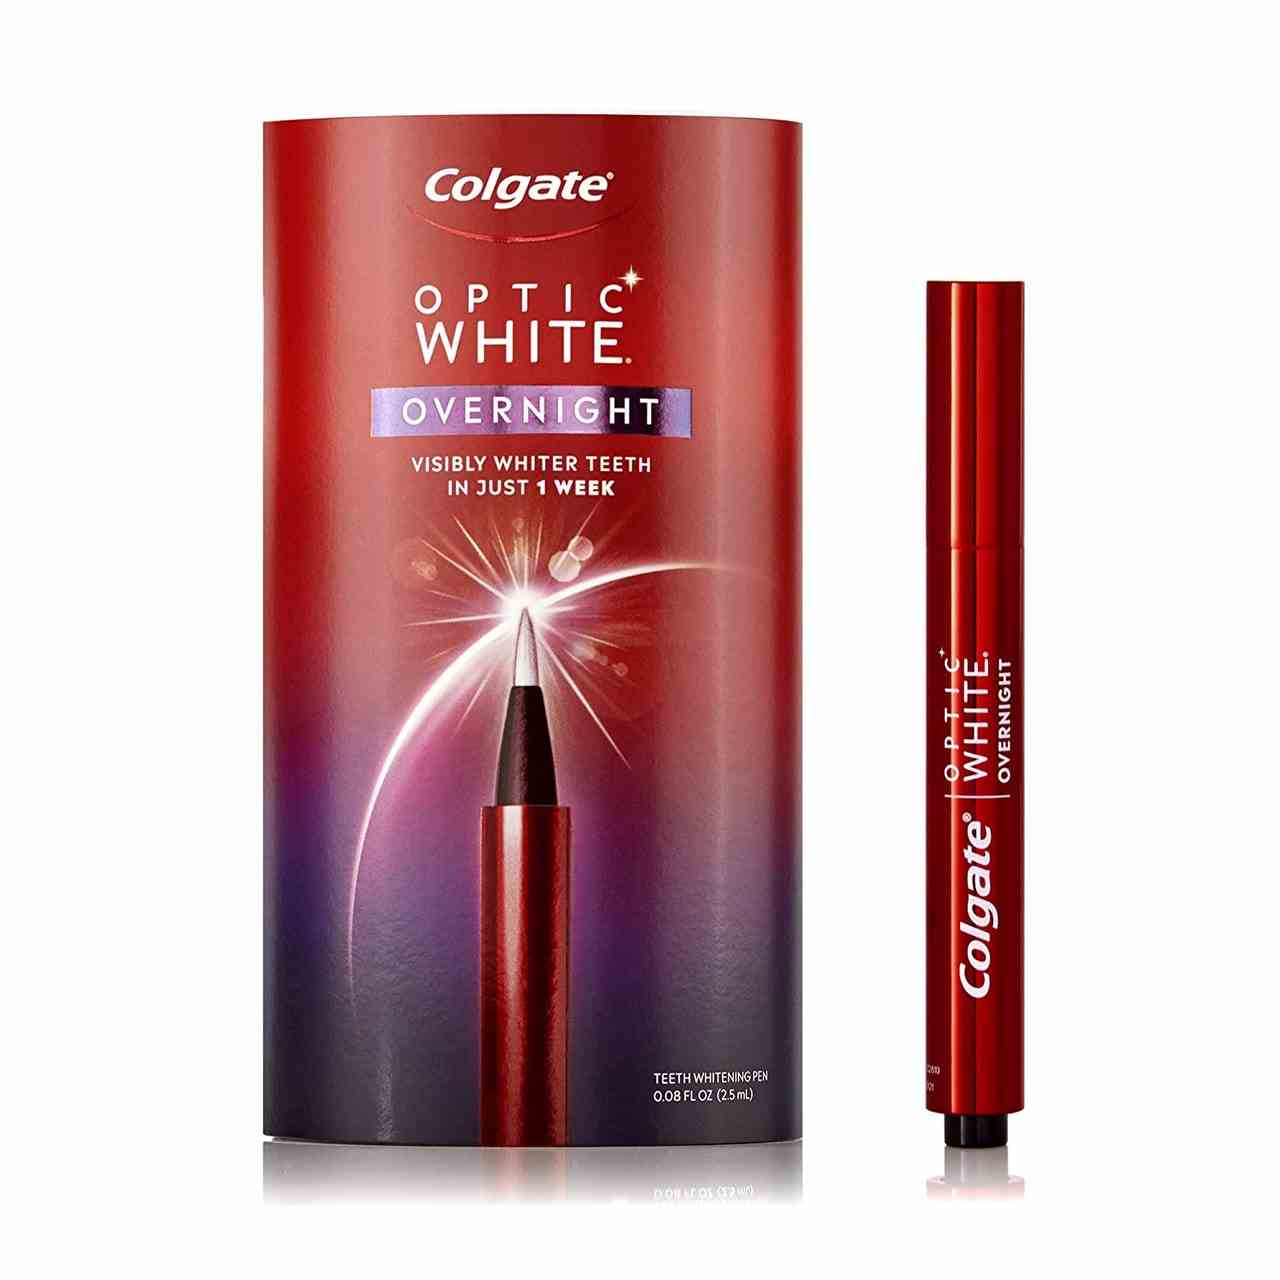 Ein roter Dentalstift-Applikator mit weißem Text, der sagt "Colgate Optic White Overnight Teeth Whitening Pen" neben der passenden rot-weißen Verpackungsbox auf weißem Hintergrund.